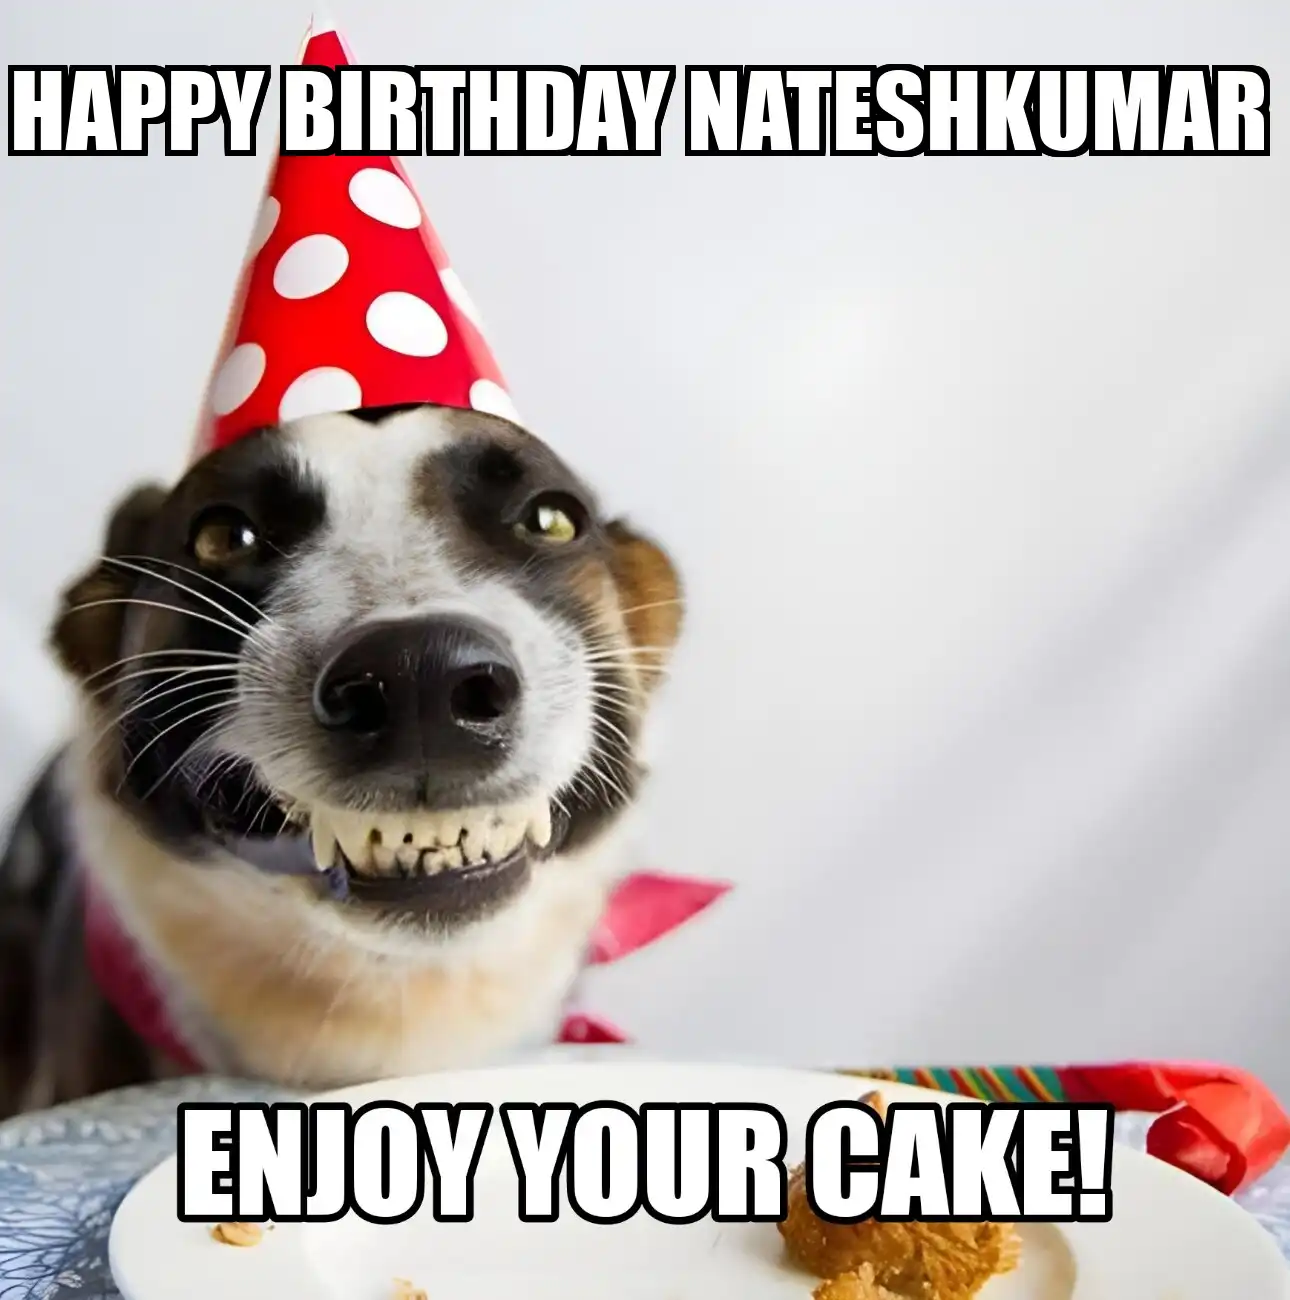 Happy Birthday Nateshkumar Enjoy Your Cake Dog Meme